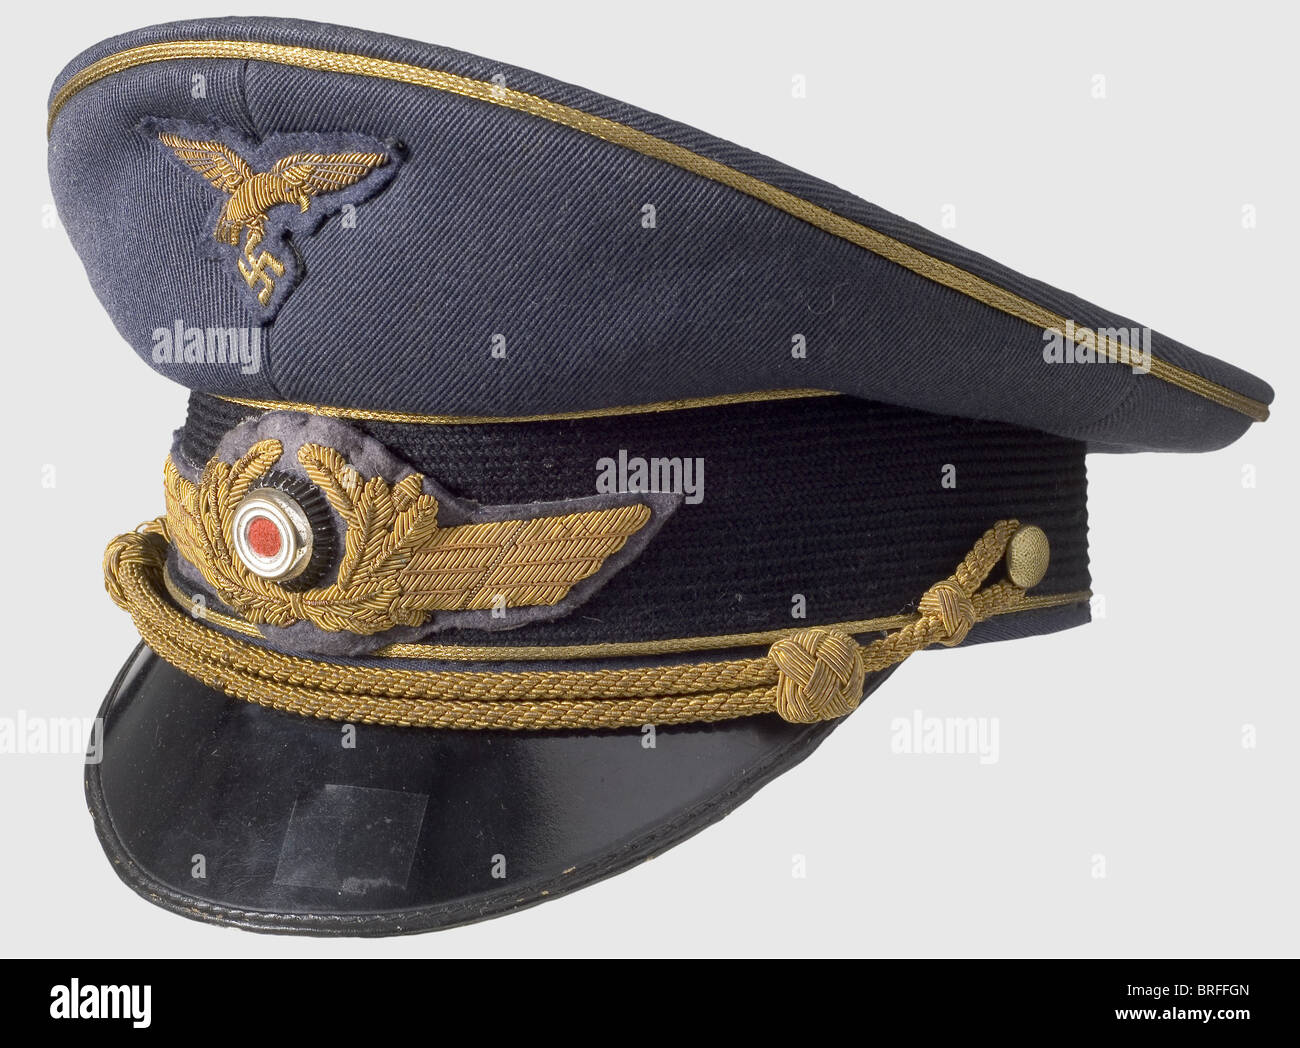 Una de visera para generales., gabardina azul de Luftwaffe con una banda de gorro de mohair negro, ribete dorado, cordón de gorra dorada e insignia bordada en oro. Forro de seda